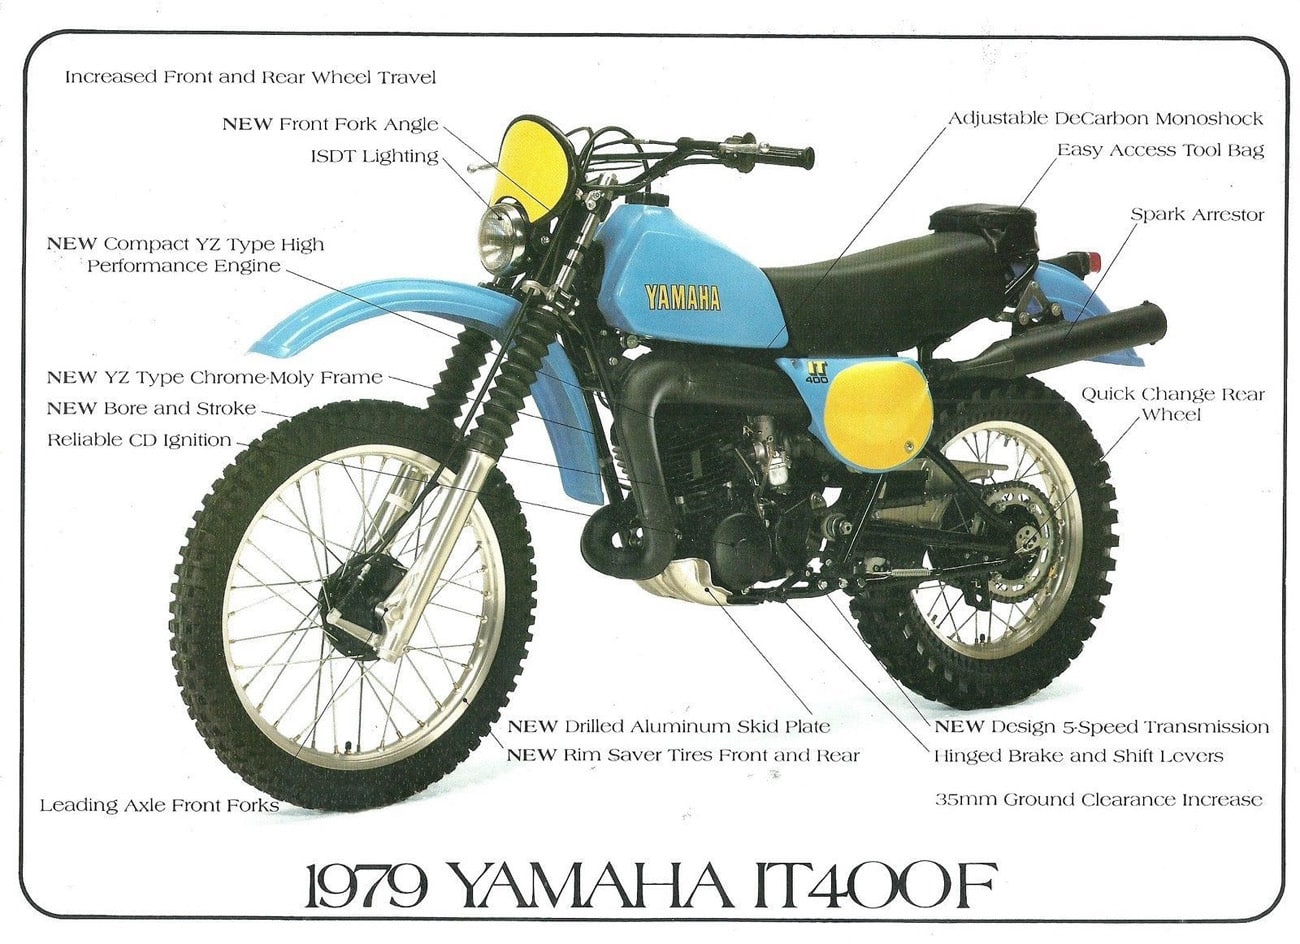 Especificaciones técnicas de la Yamaha IT 400